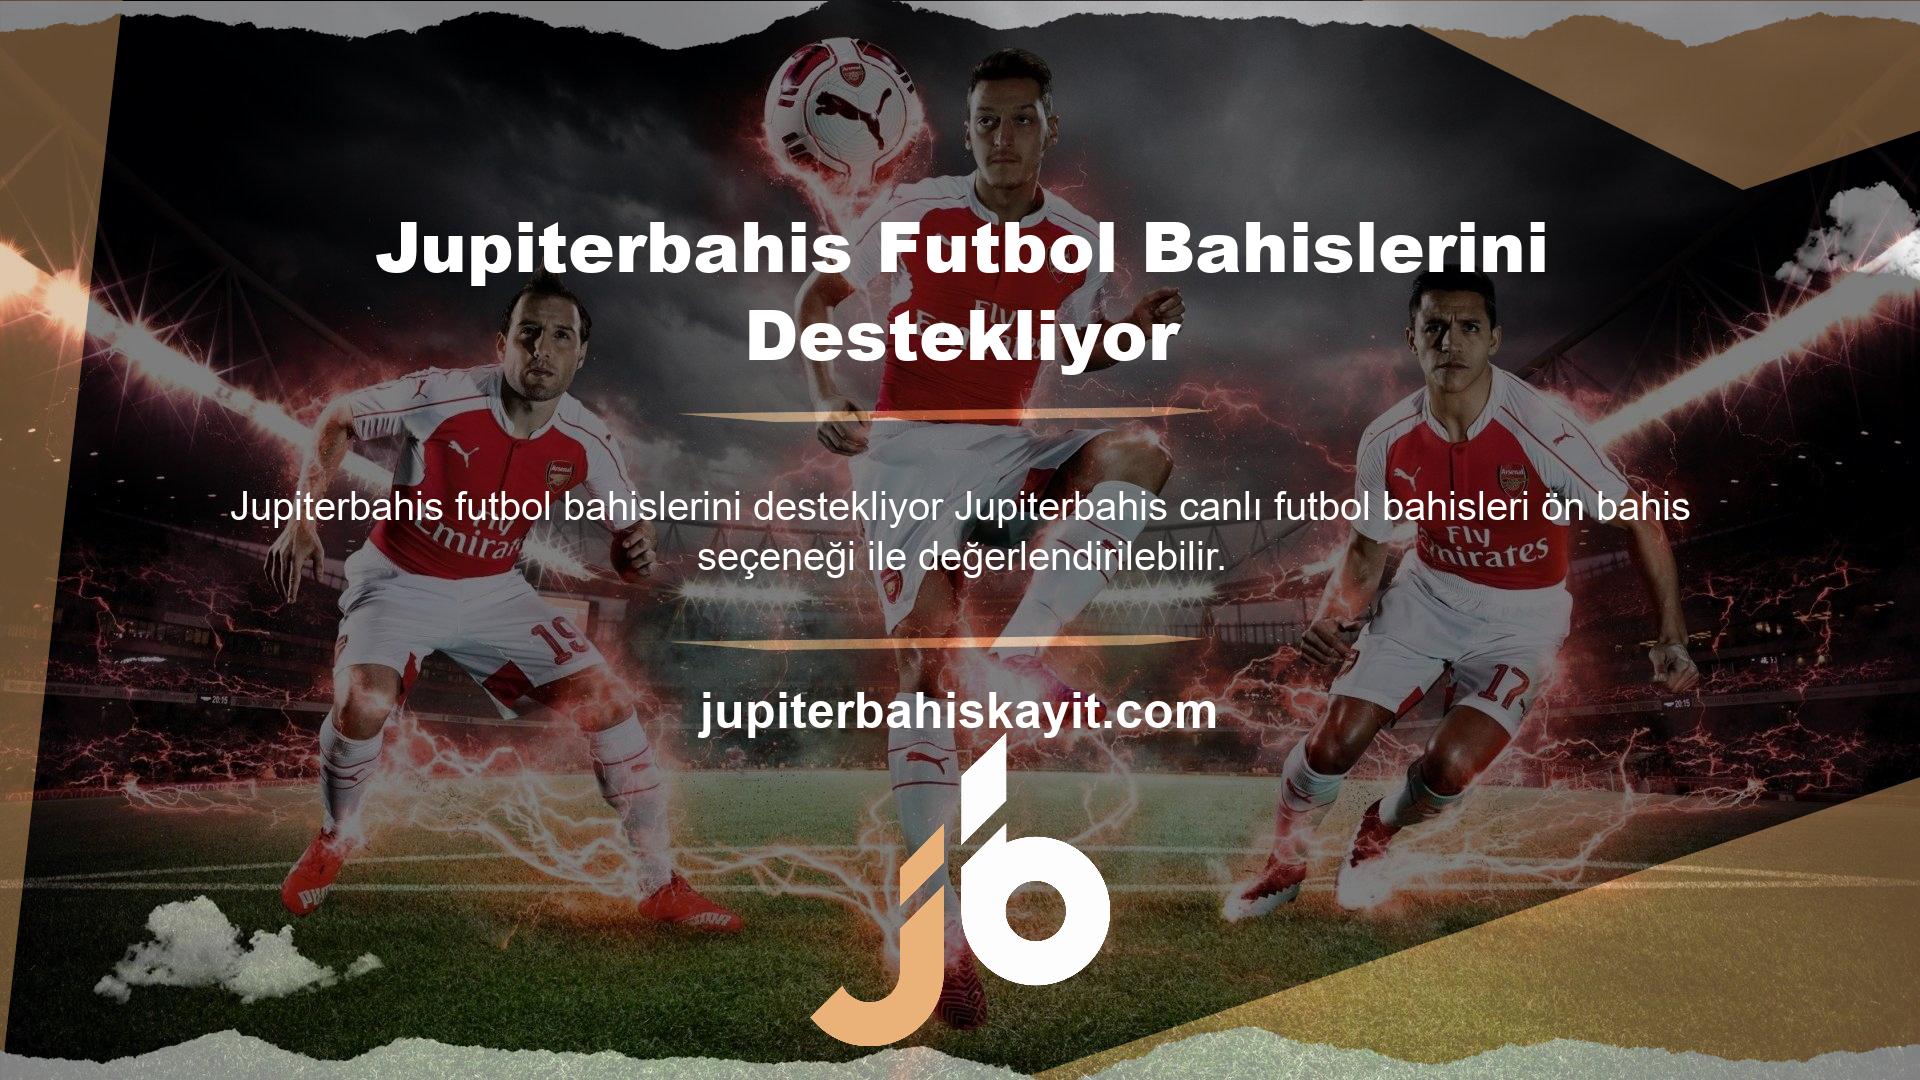 Jupiterbahis web sitesinde bu sefer çeşitli futbol ligleri ve küçük ligler yer alıyor